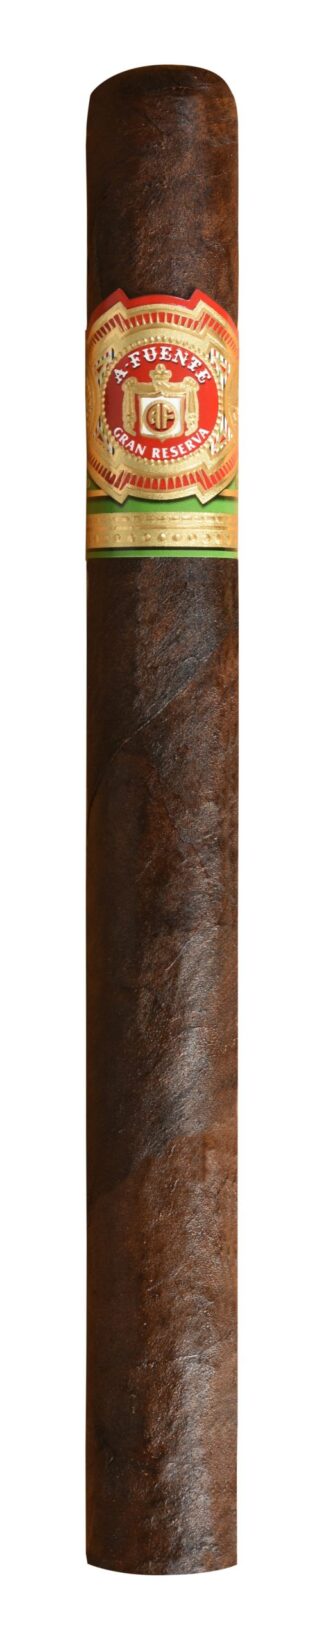 single arturo fuente churchill maduro cigar